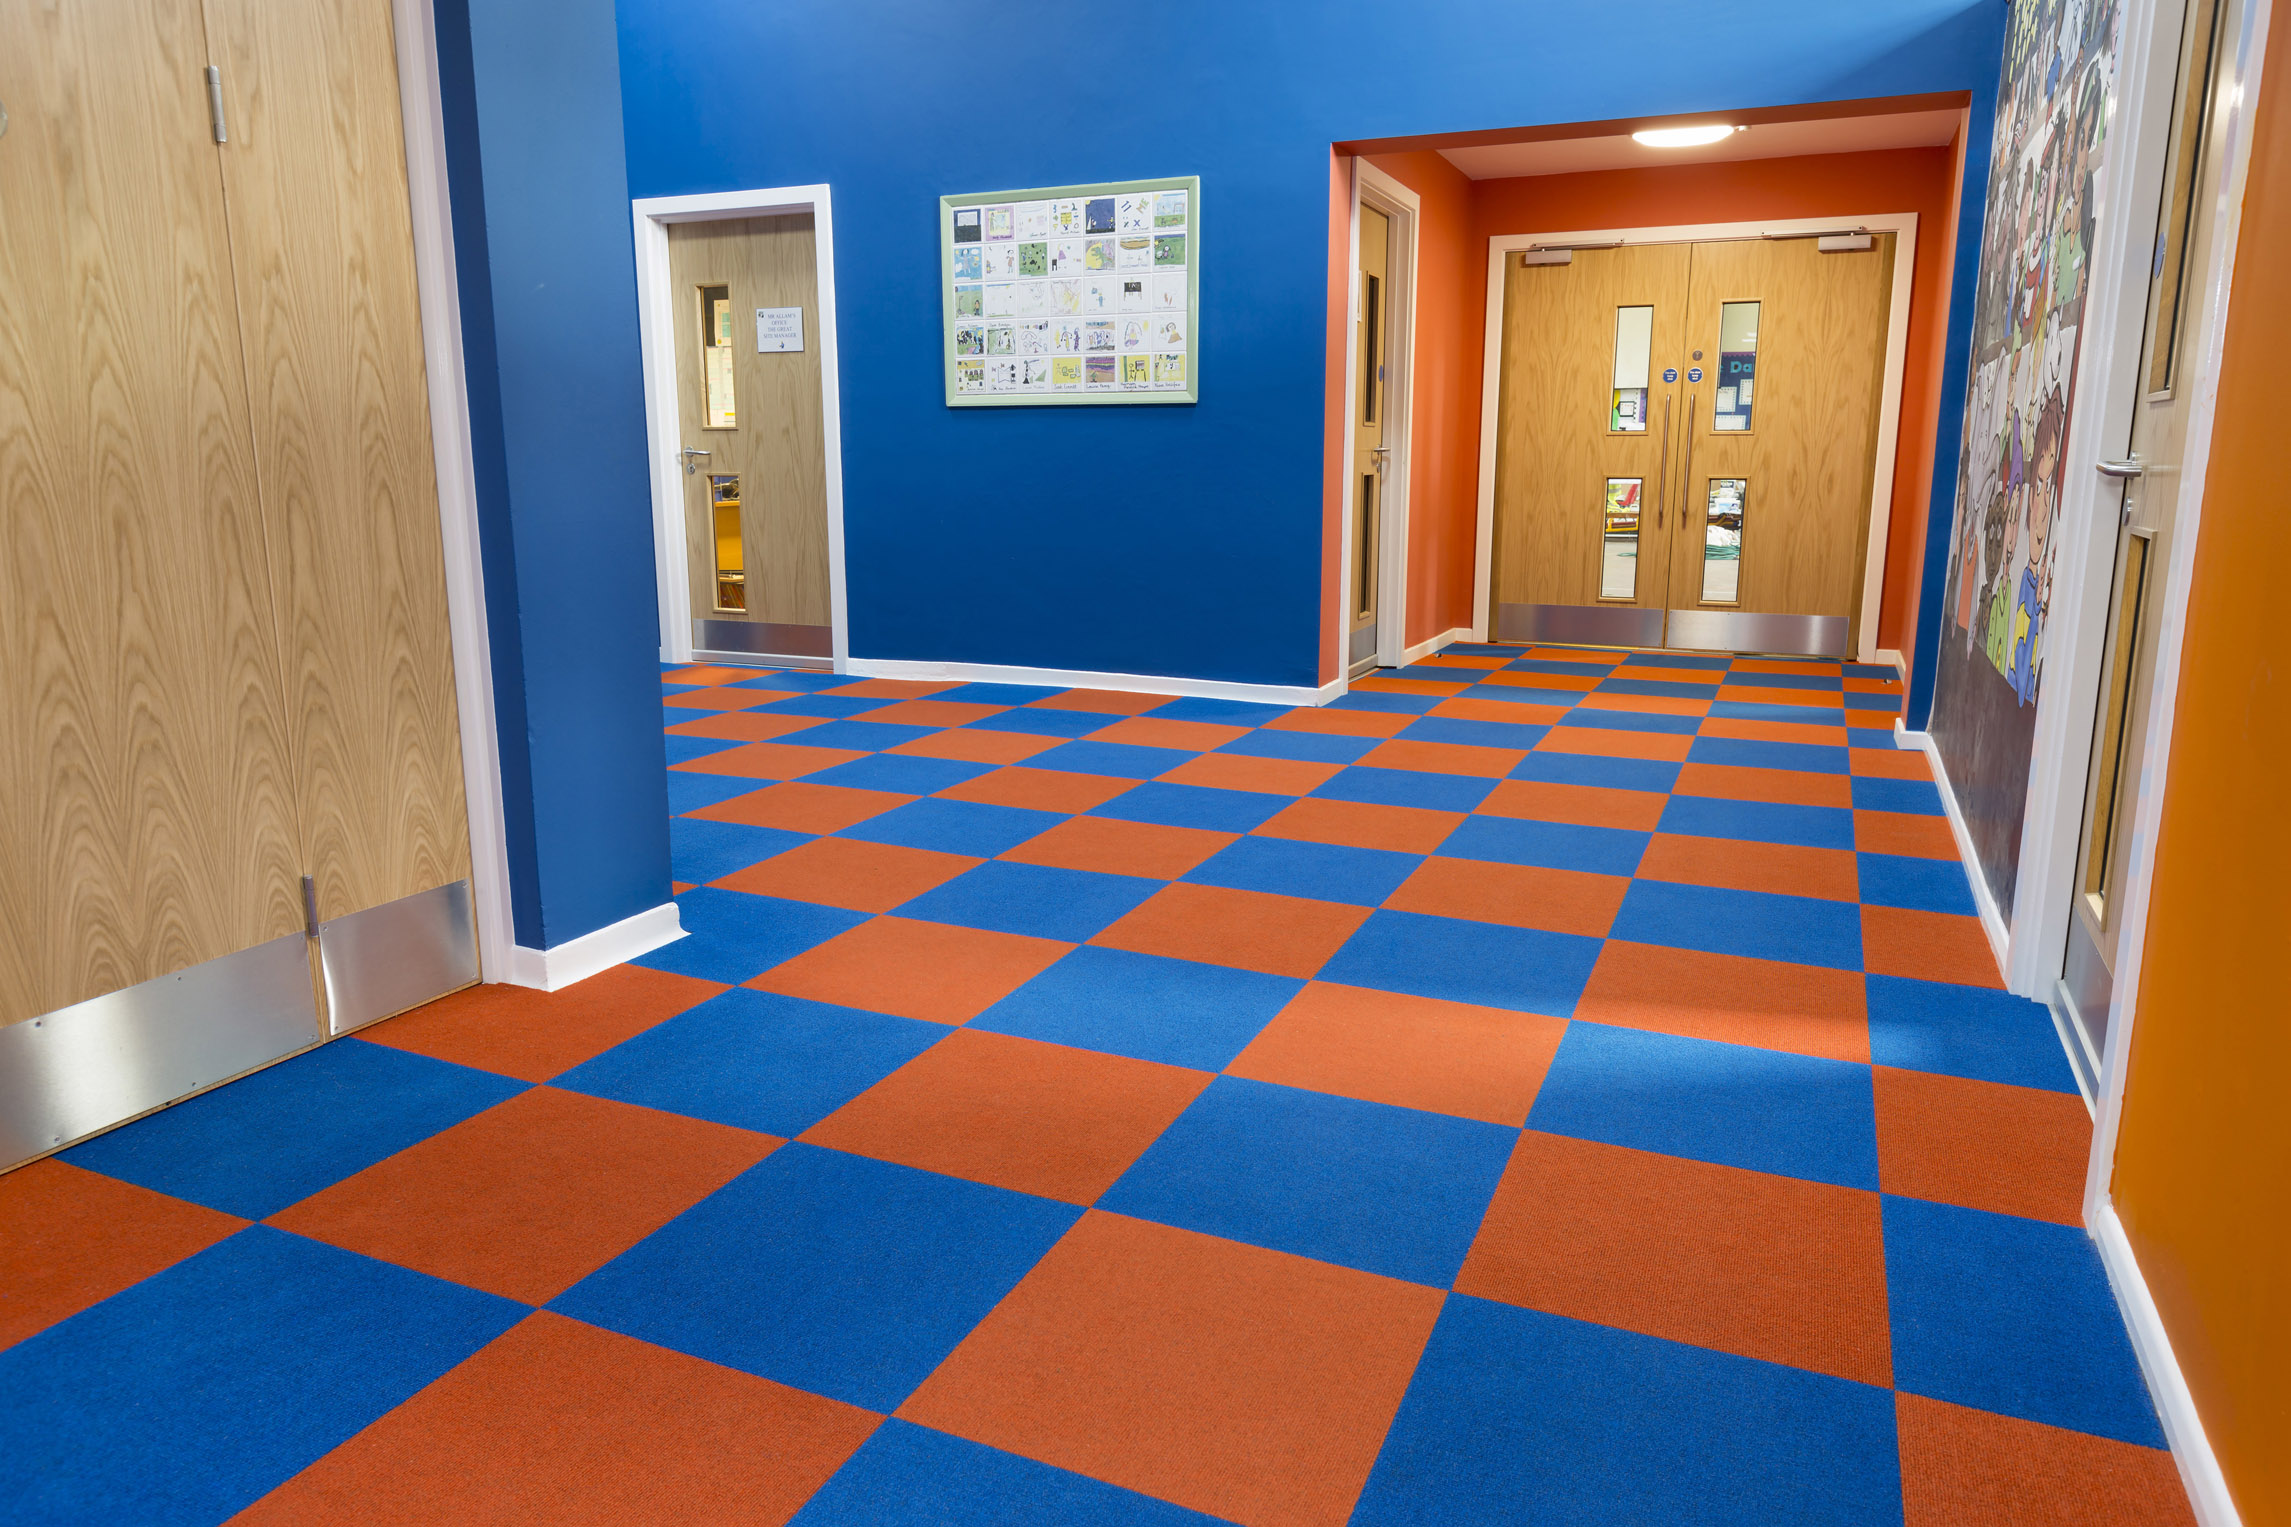 Heckmondwike Supacord Orange and Blue Carpet Tile in school hallway.